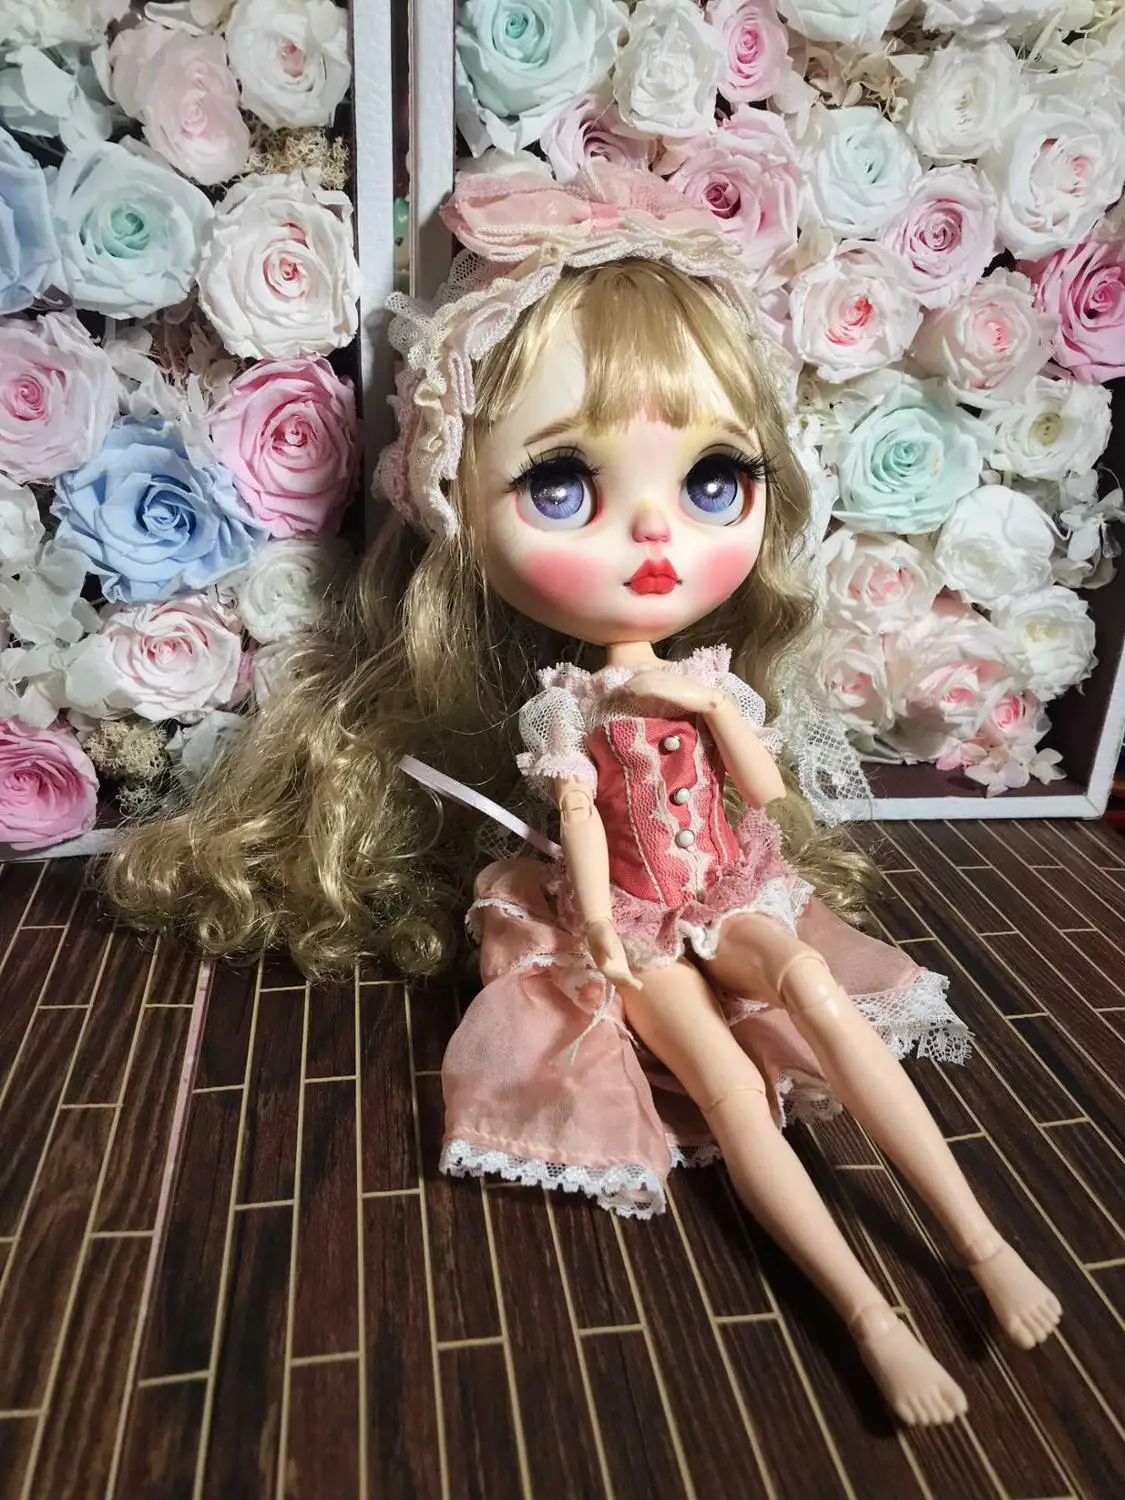 Кастомизация кукла Обнаженная blyth кукла для девочек Обнаженная кукла-0610